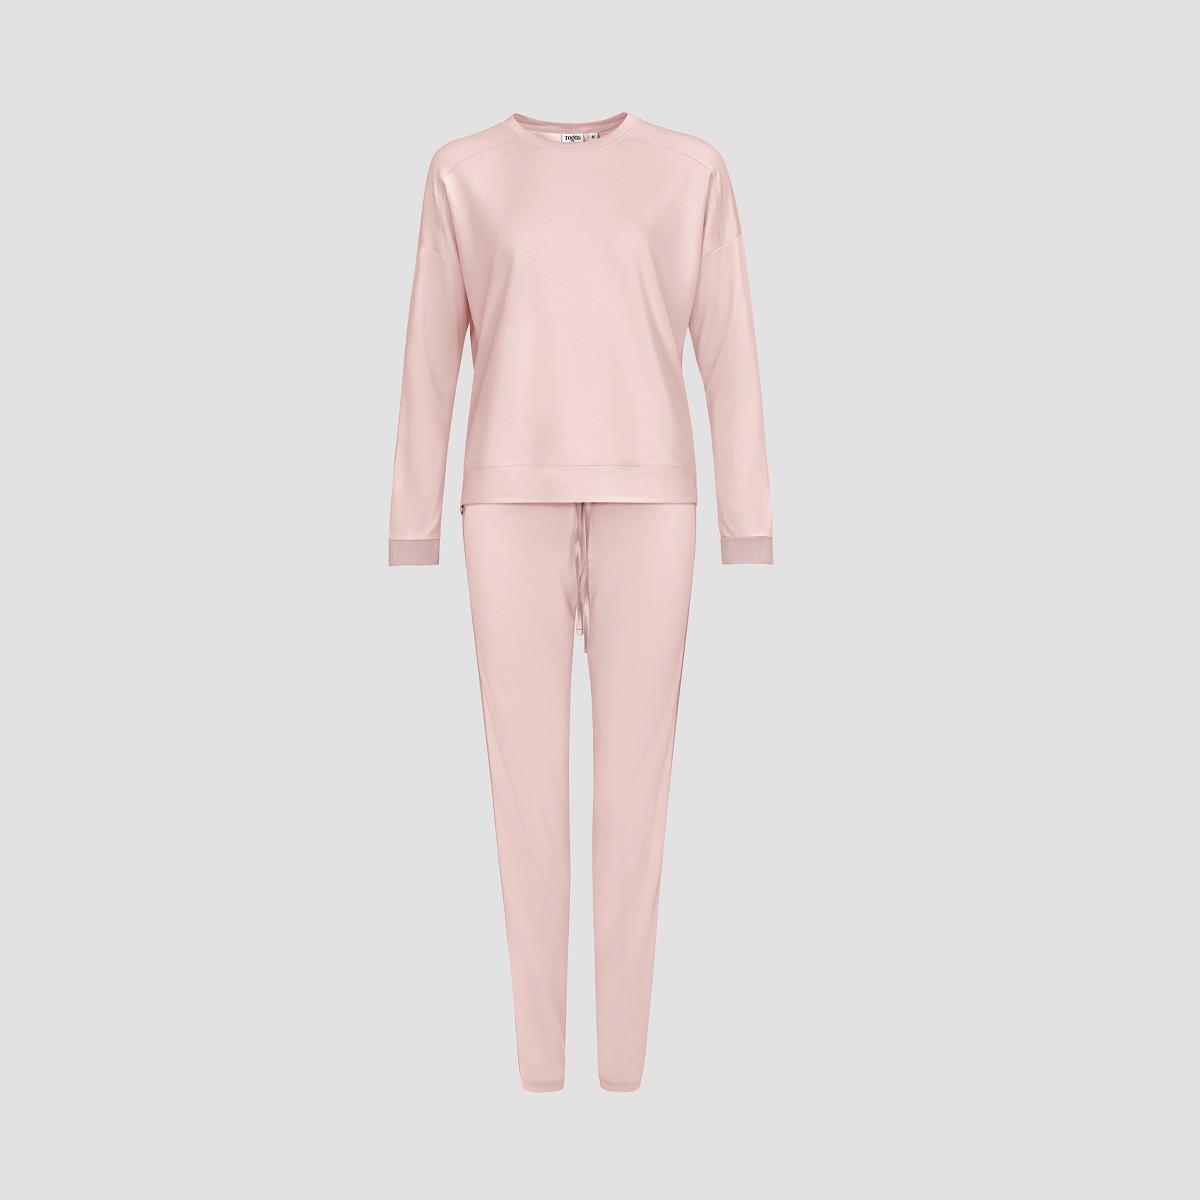 Пижама Togas Рене розовая женская пижама для девочек kids by togas стробби бело розовый 116 122 см